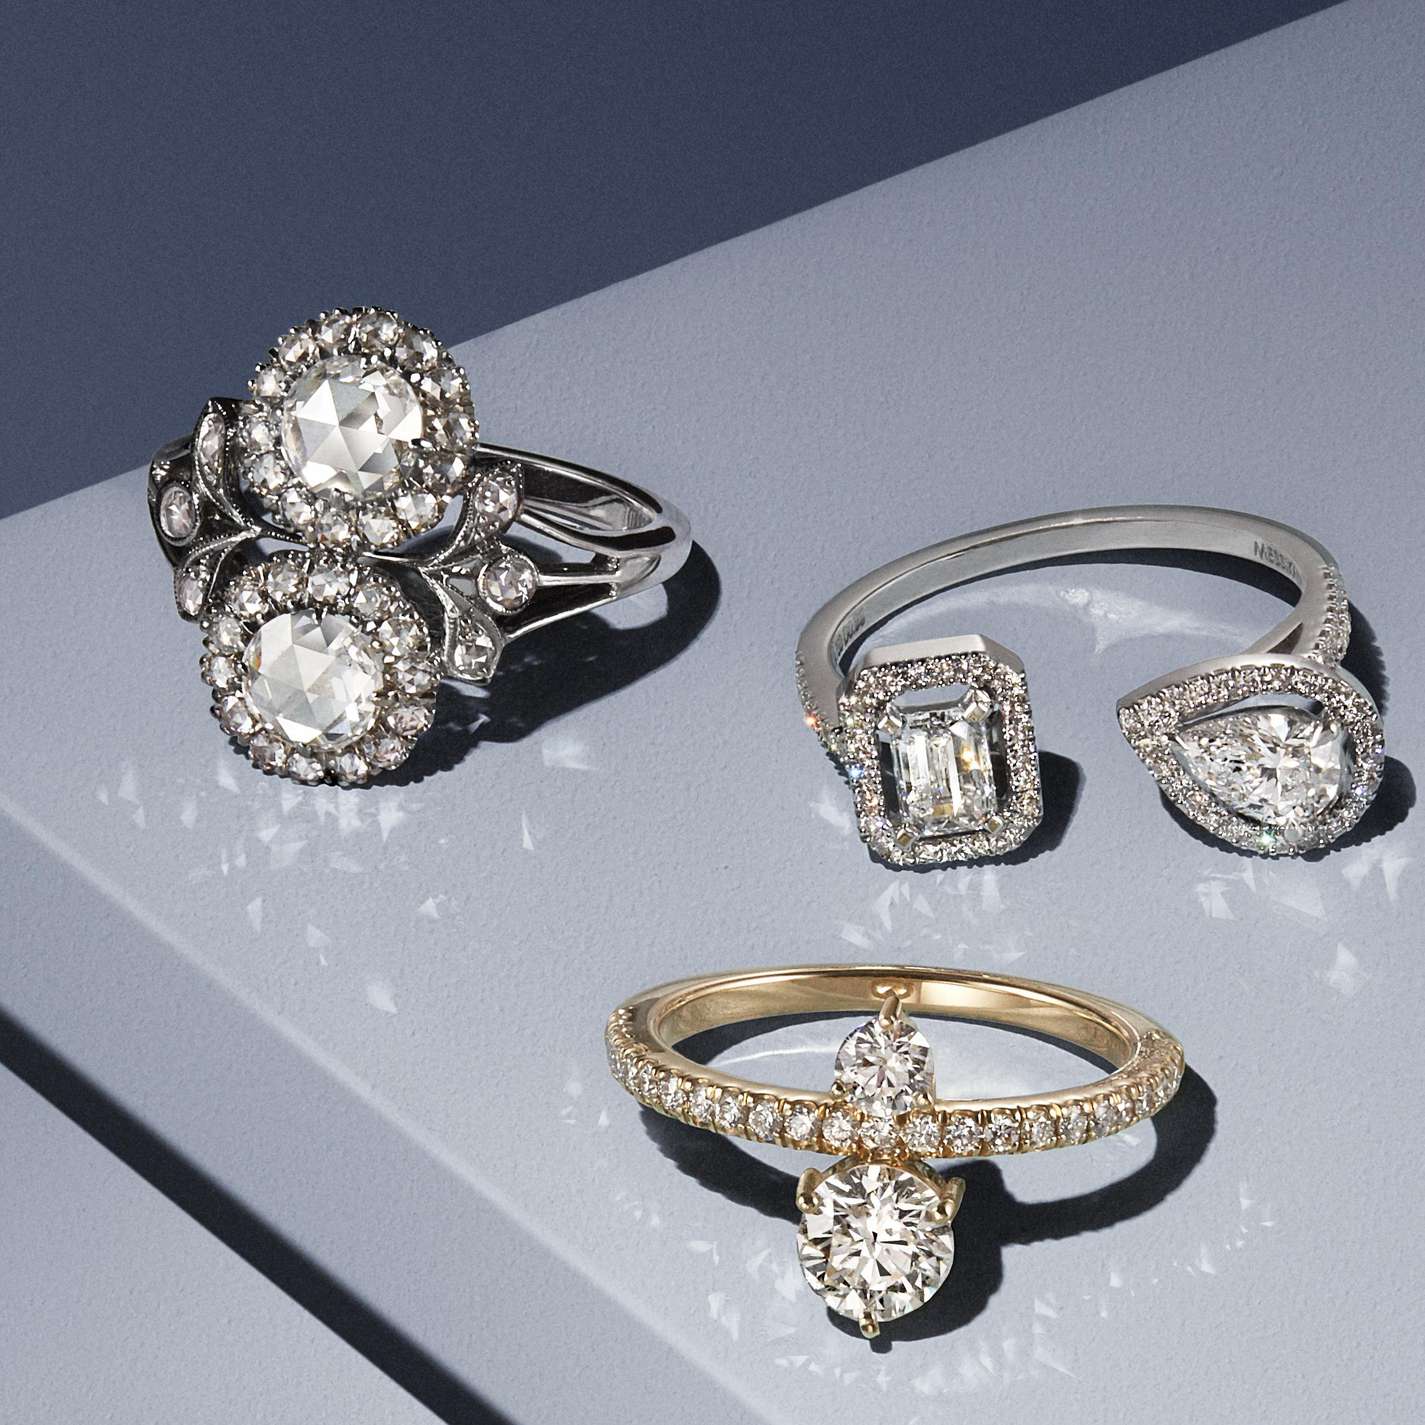 デザイナーが選ぶ美しい2つのダイヤモンドのオーダー婚約指輪20選 